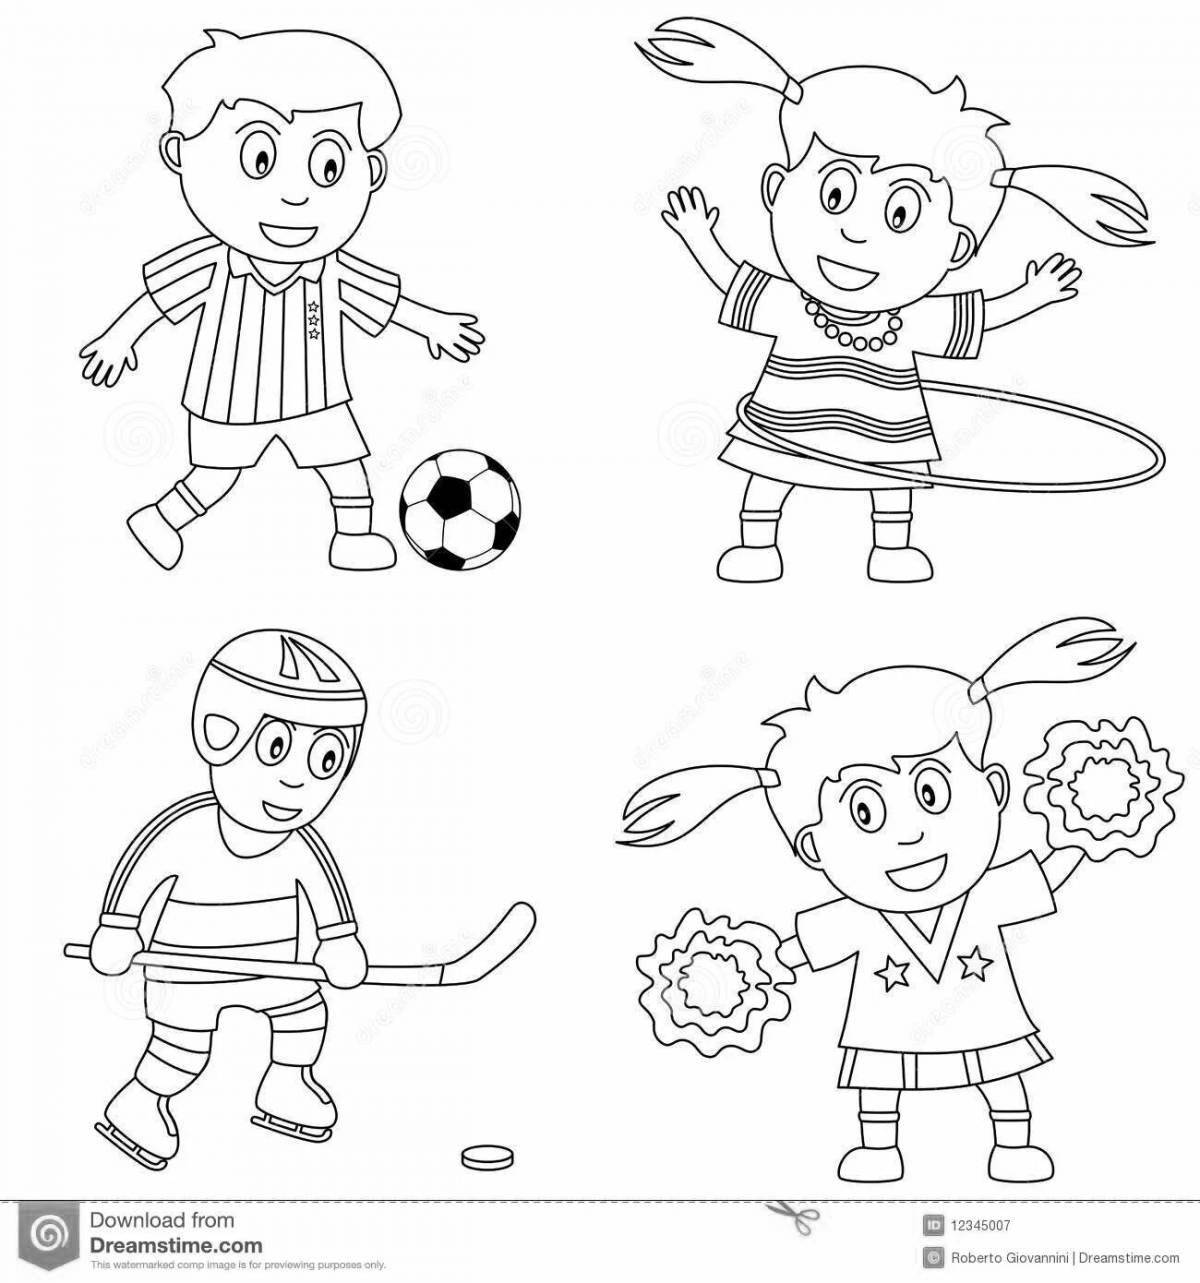 Сладкая спортивная раскраска для детей 4-5 лет